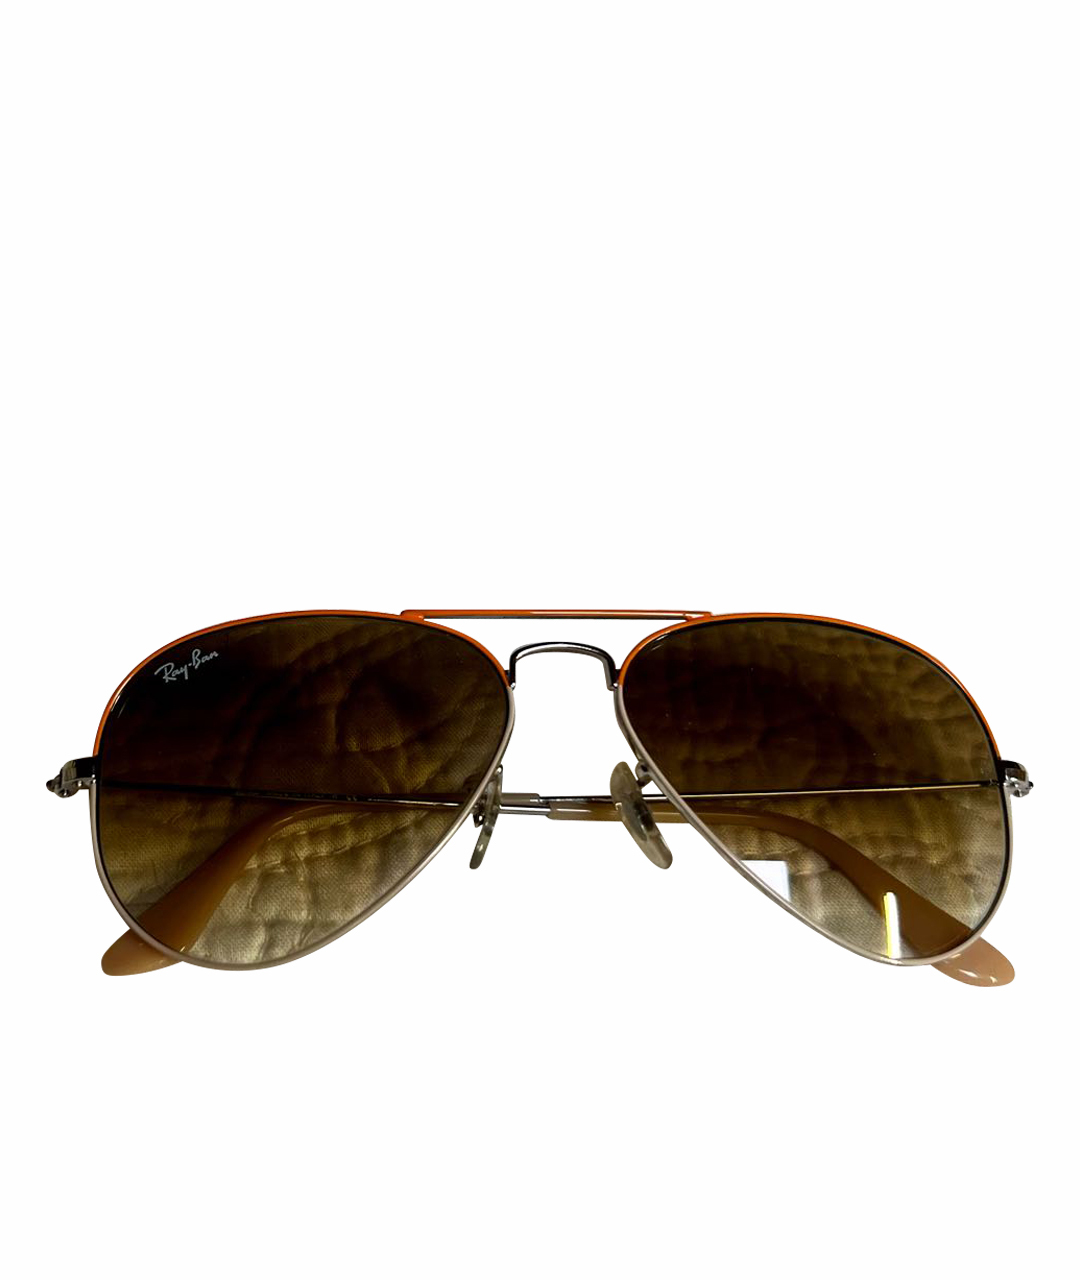 RAY BAN Оранжевое металлические солнцезащитные очки, фото 1